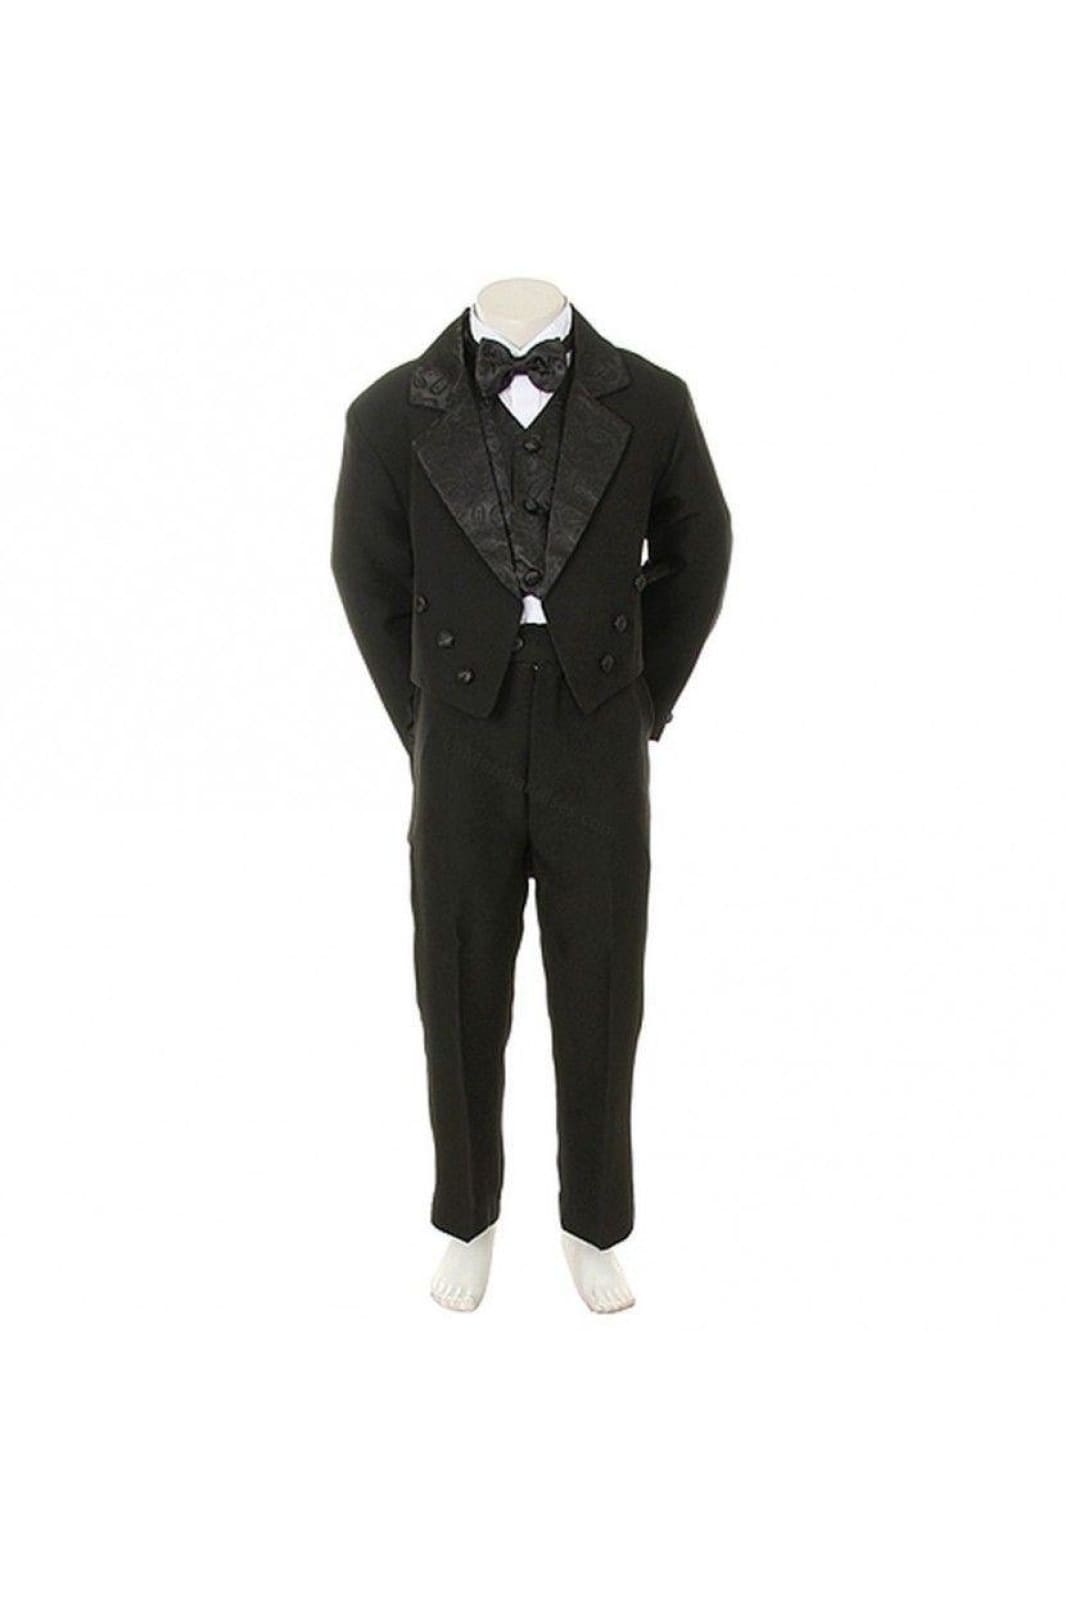 LA Merchandise LADTX100 5 pc Boys Tail Tuxedo With Jacquard Bowtie & Vest - BLACK - Boys suits LA Merchandise